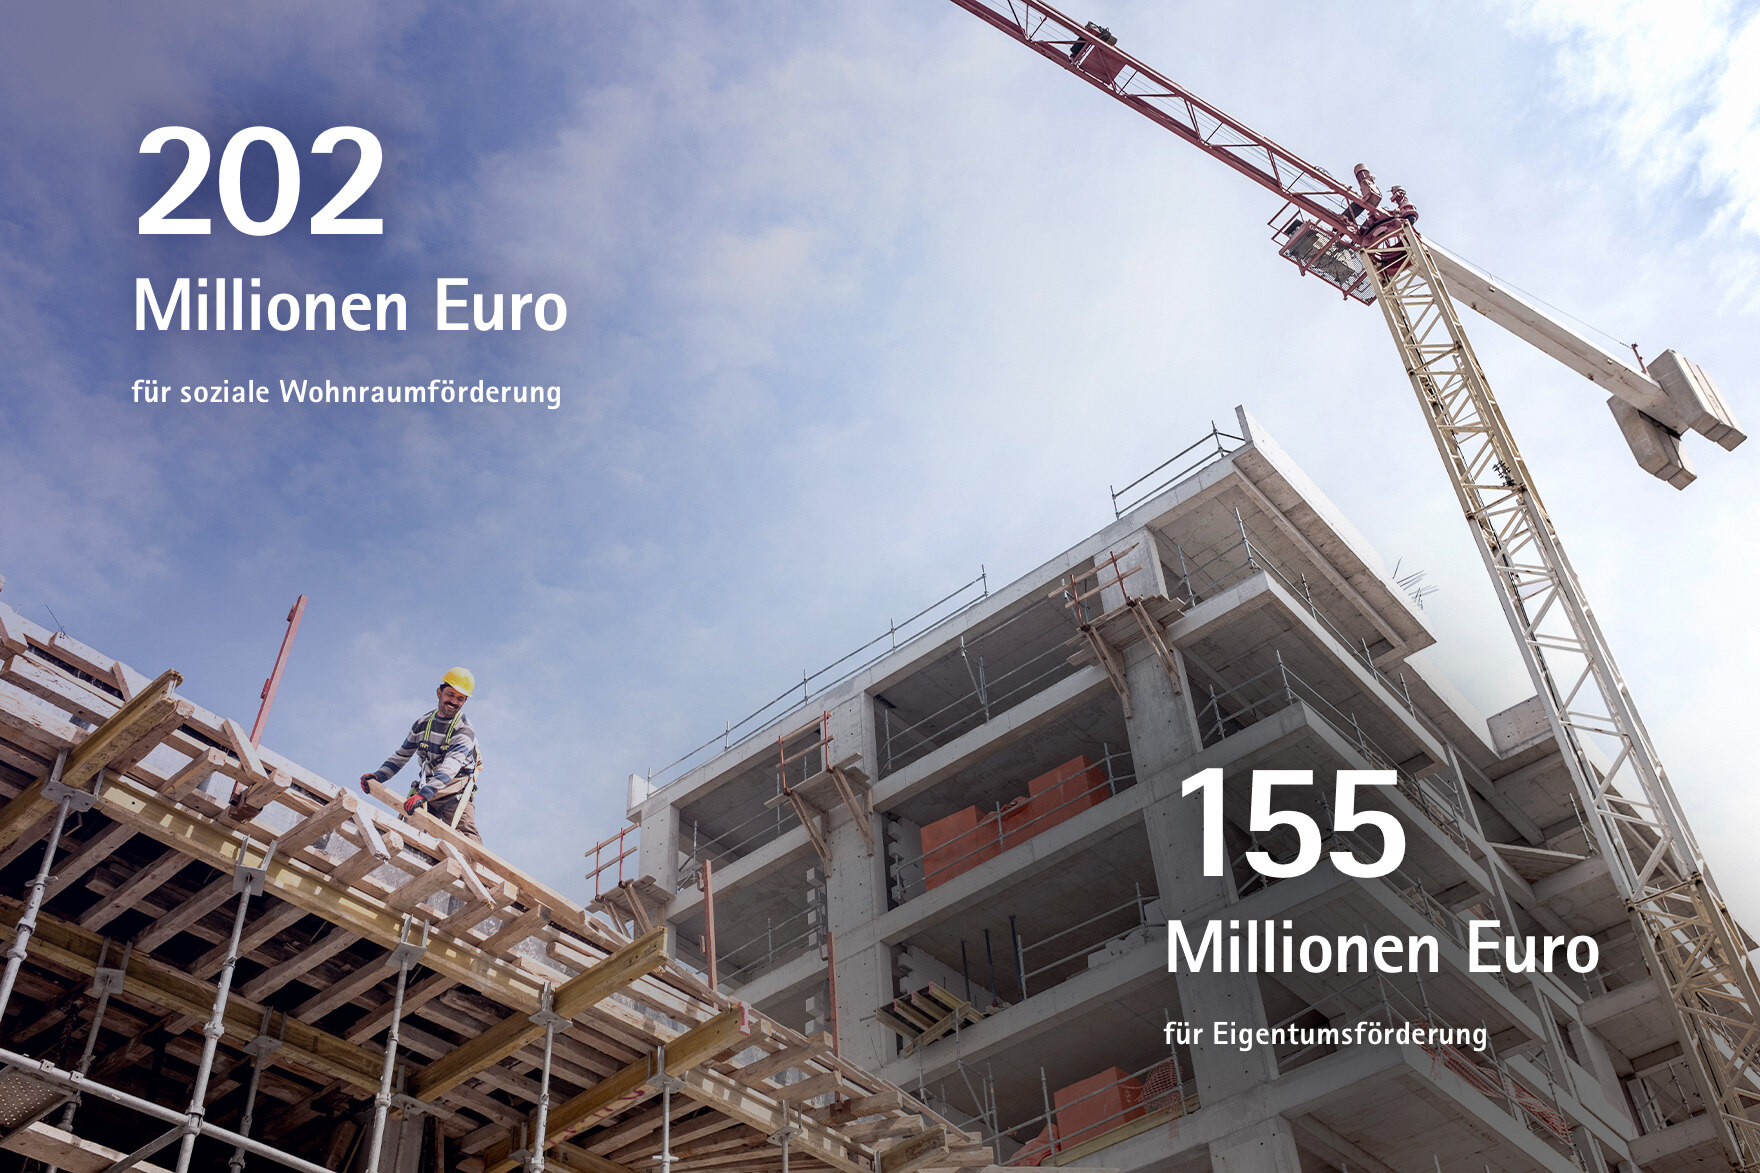 202 Millionen Euro für soziale Wohnraumförderung, 155 Millionen Euro für Eigentumsförderung